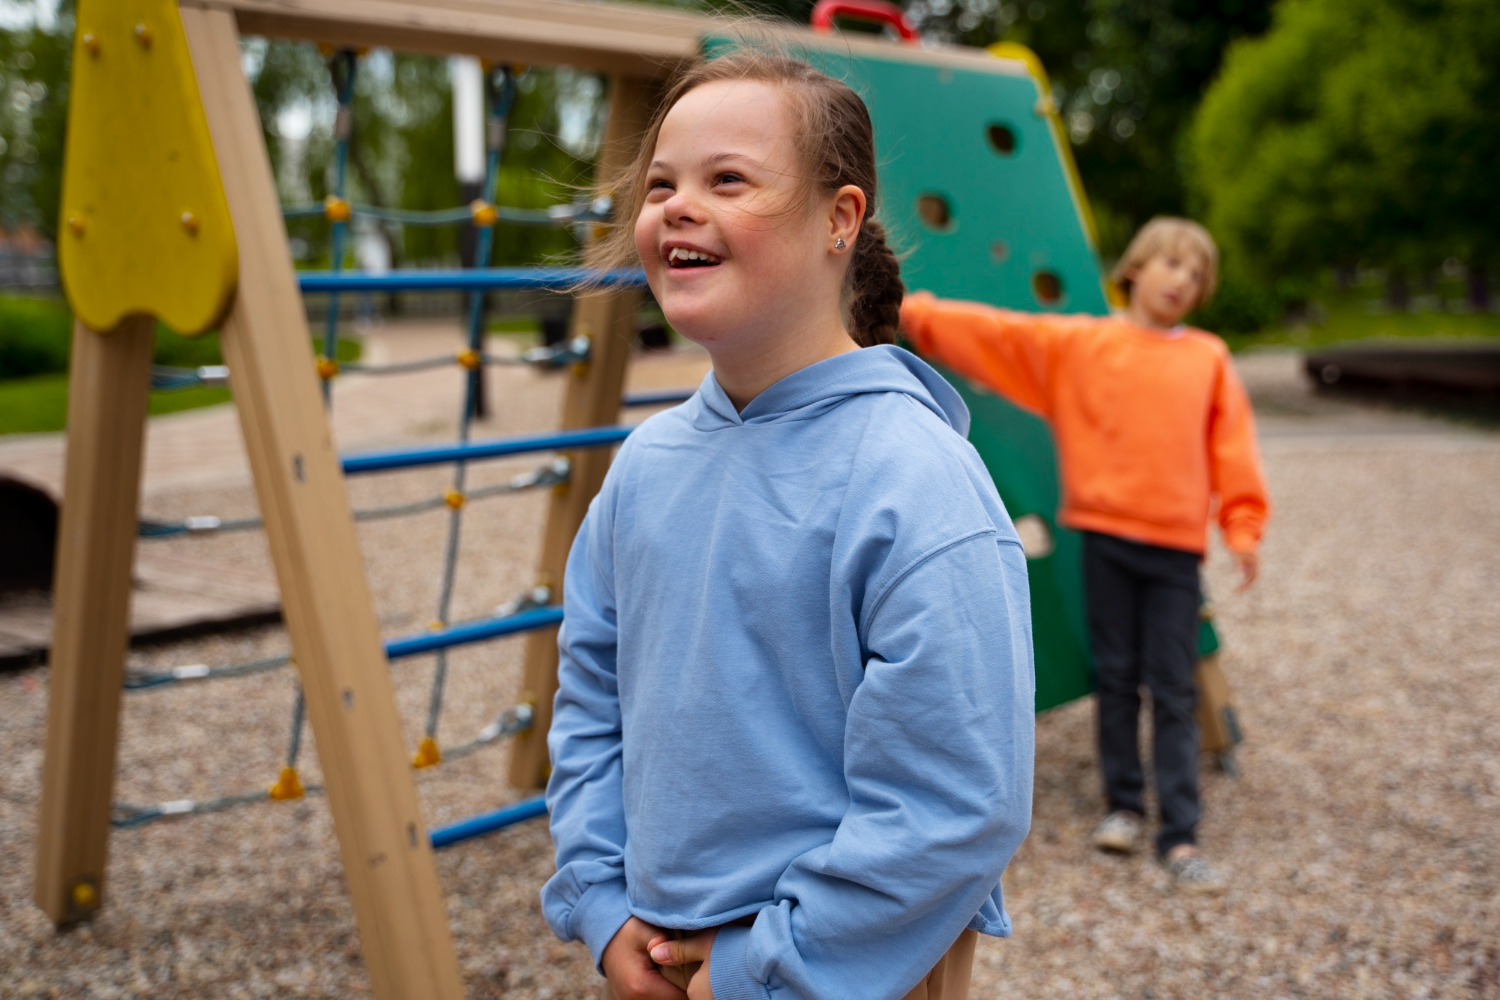 Crianças com deficiência podem receber BPC em dobro